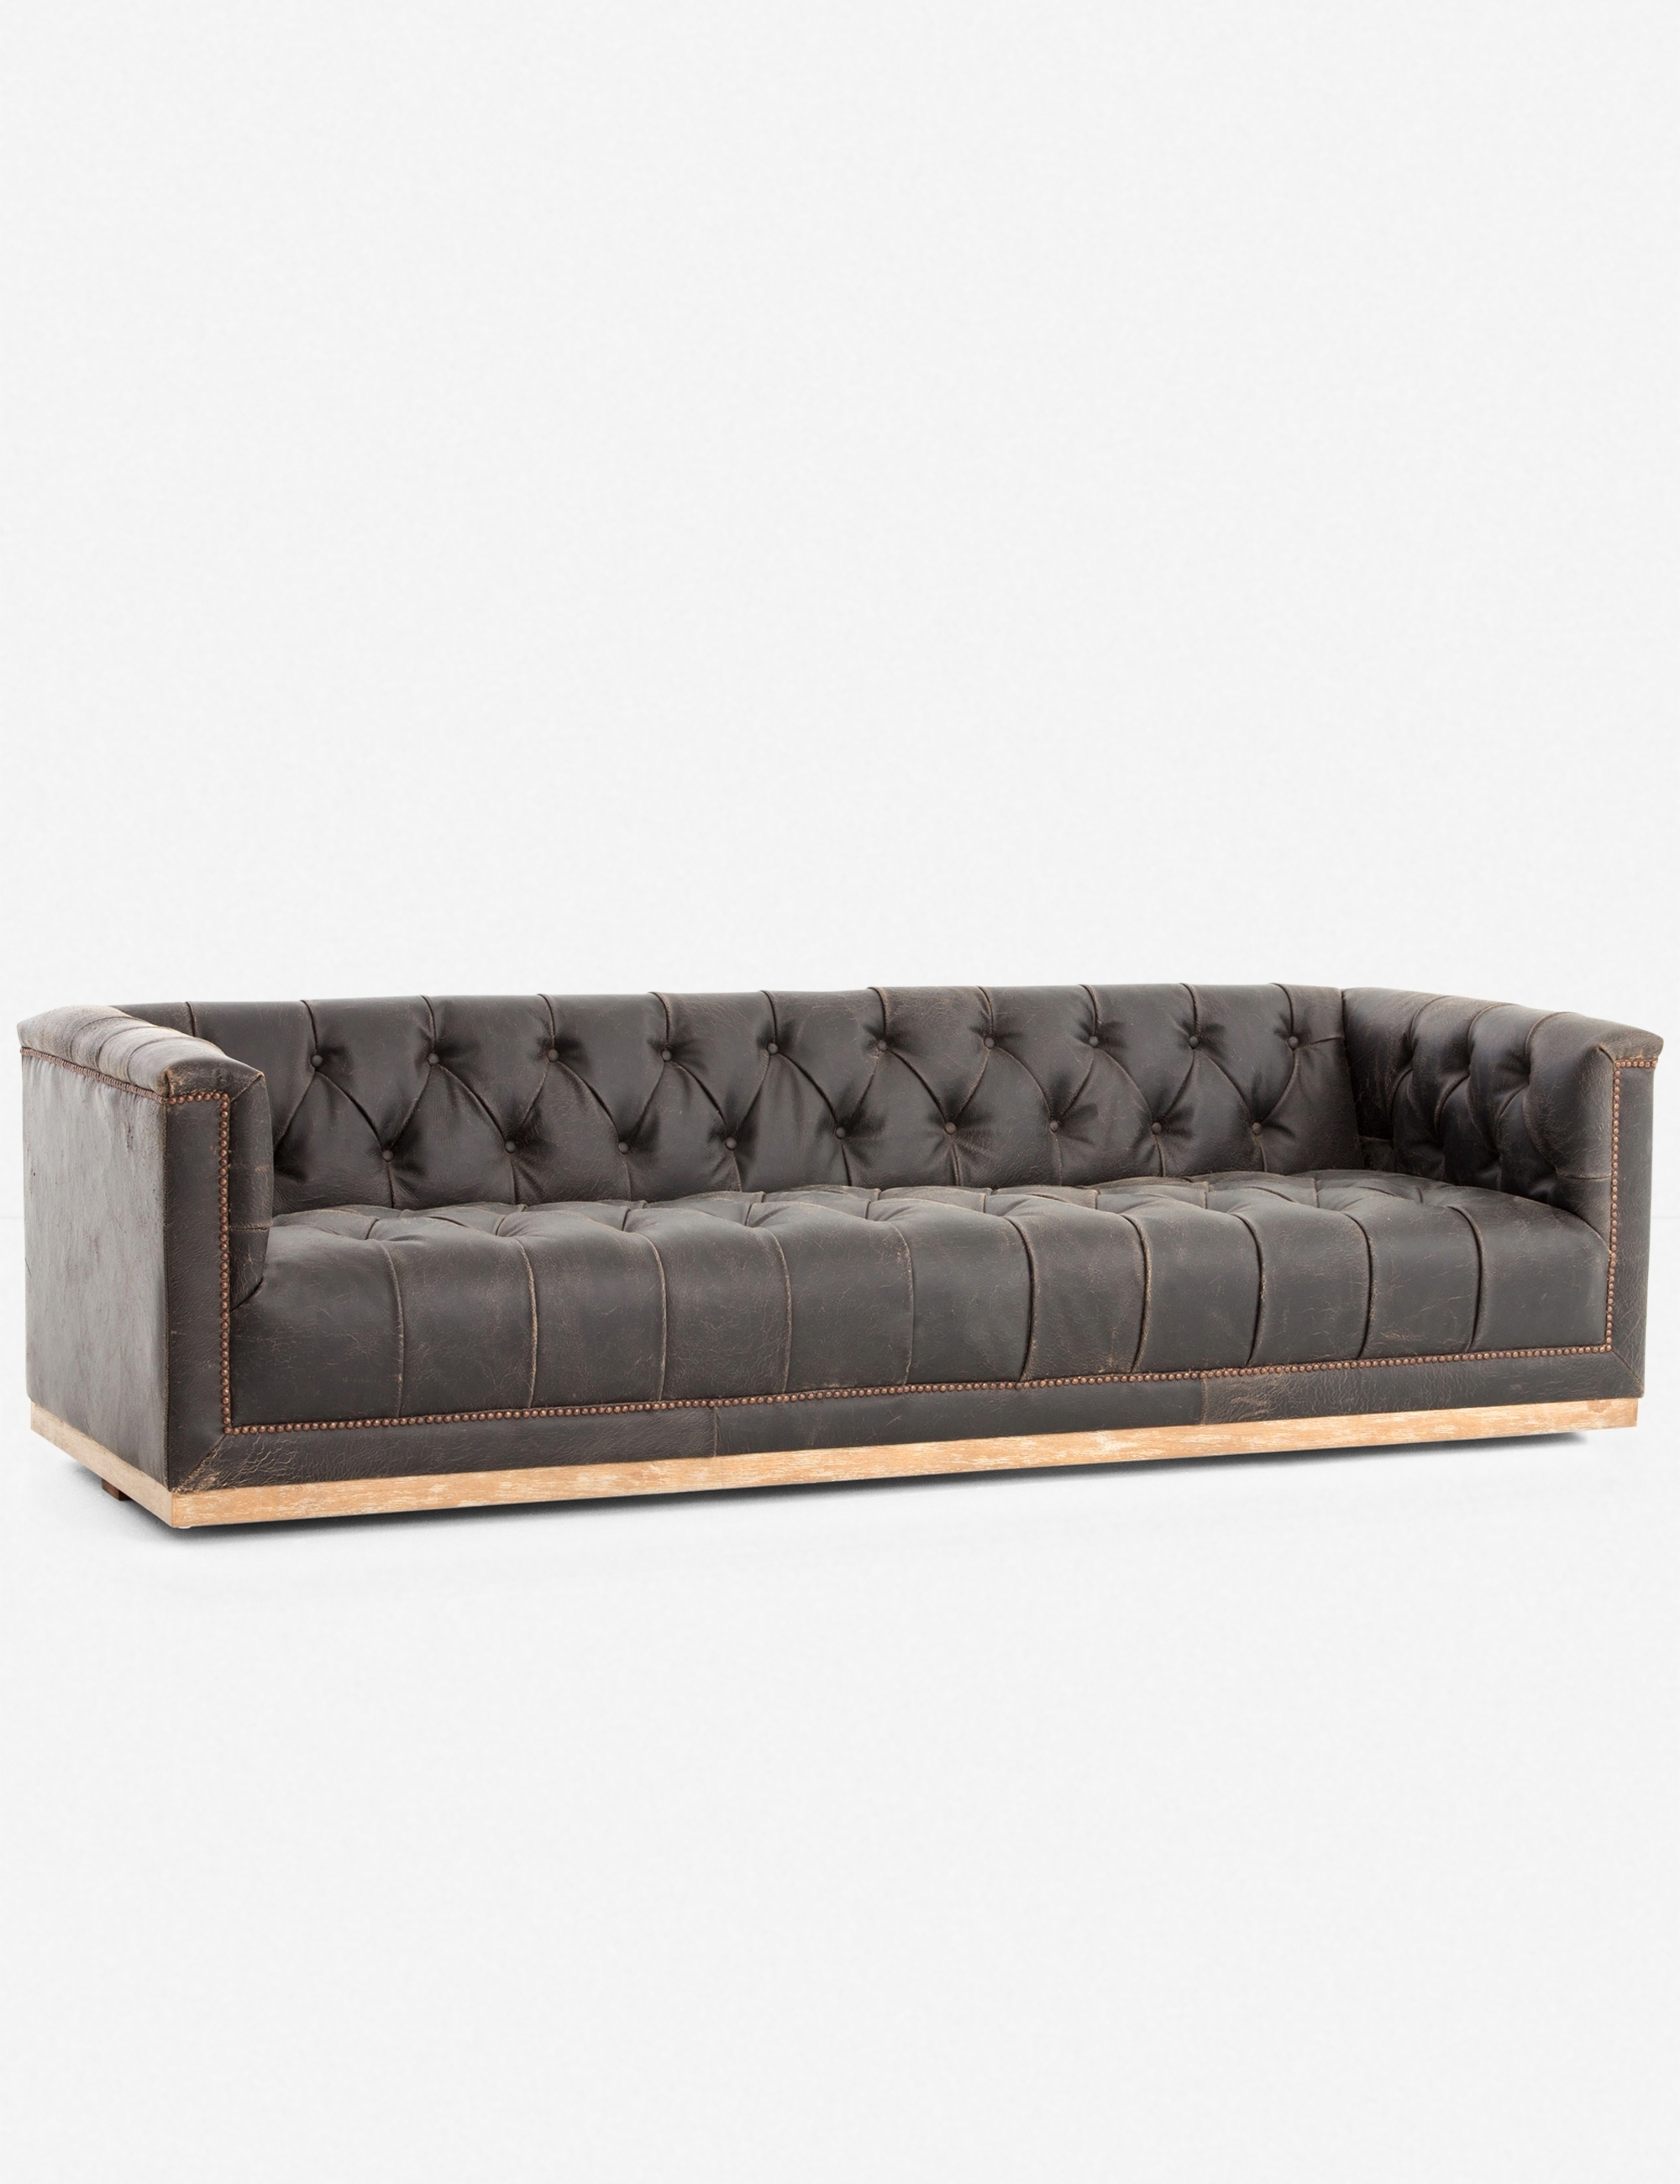 Afia Leather Sofa, Distressed Black - Image 0